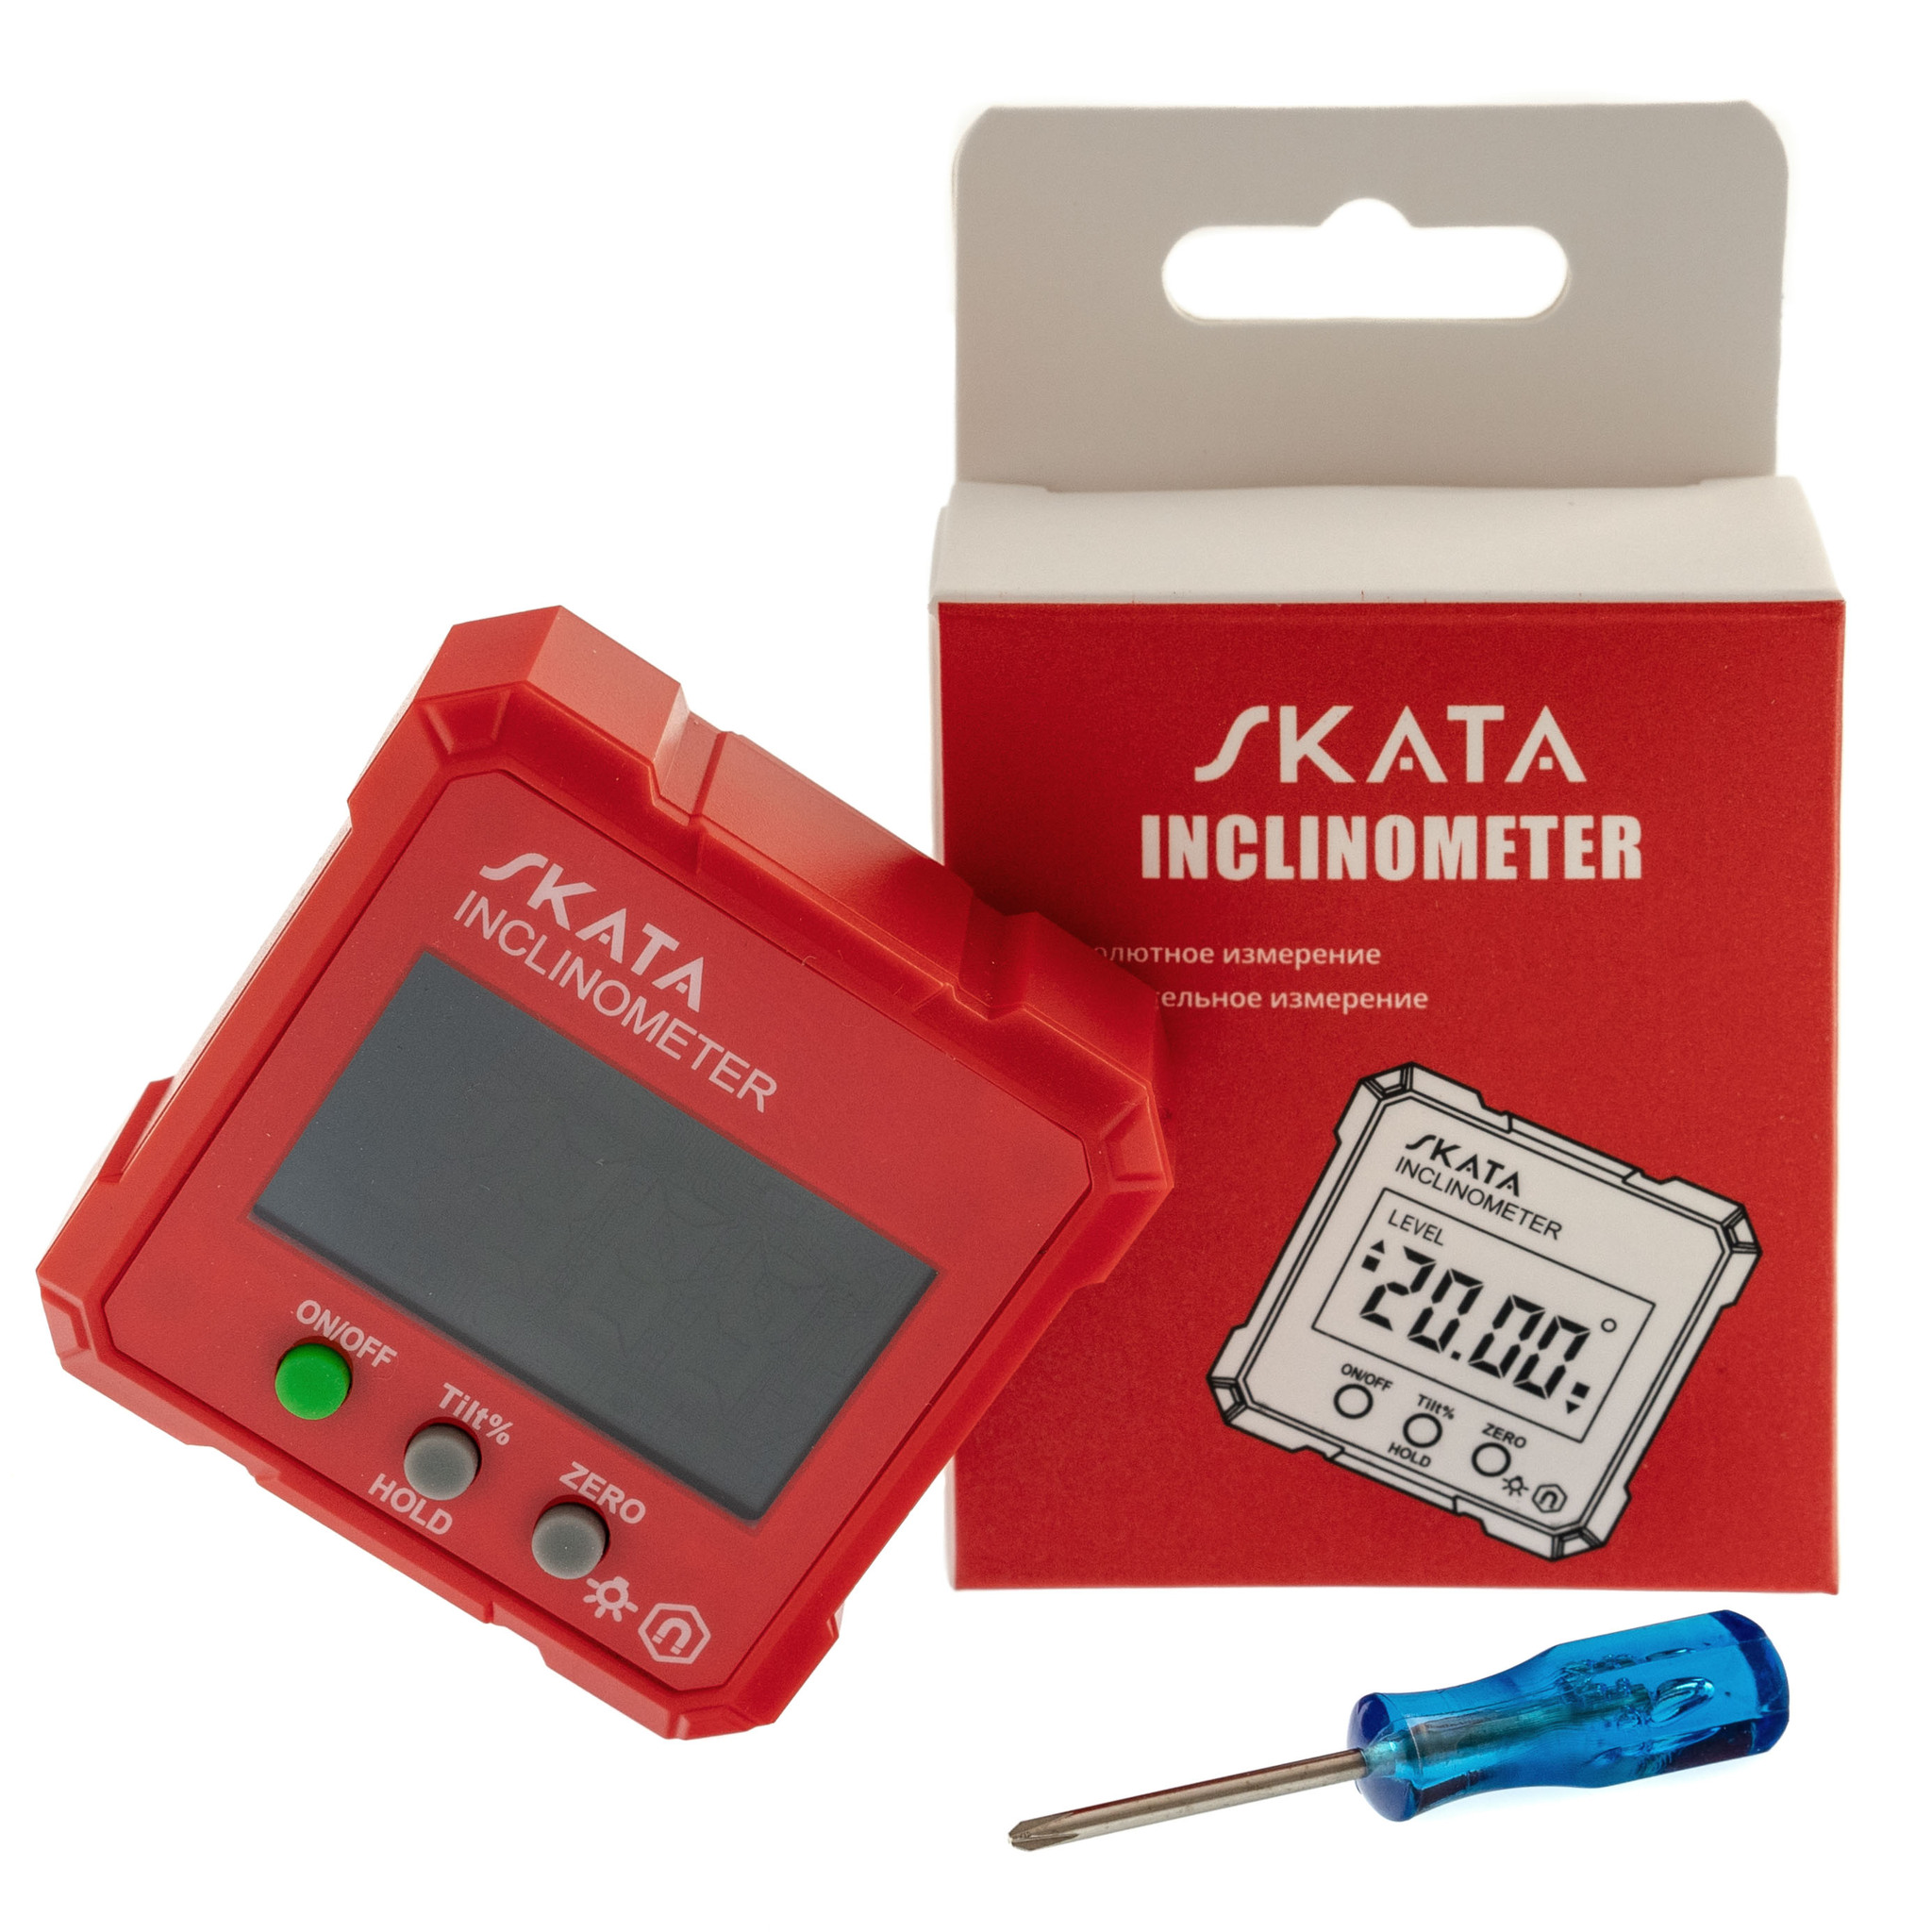 Угломер электронный с магнитным основанием, SKATA Inclinometer - фото 6